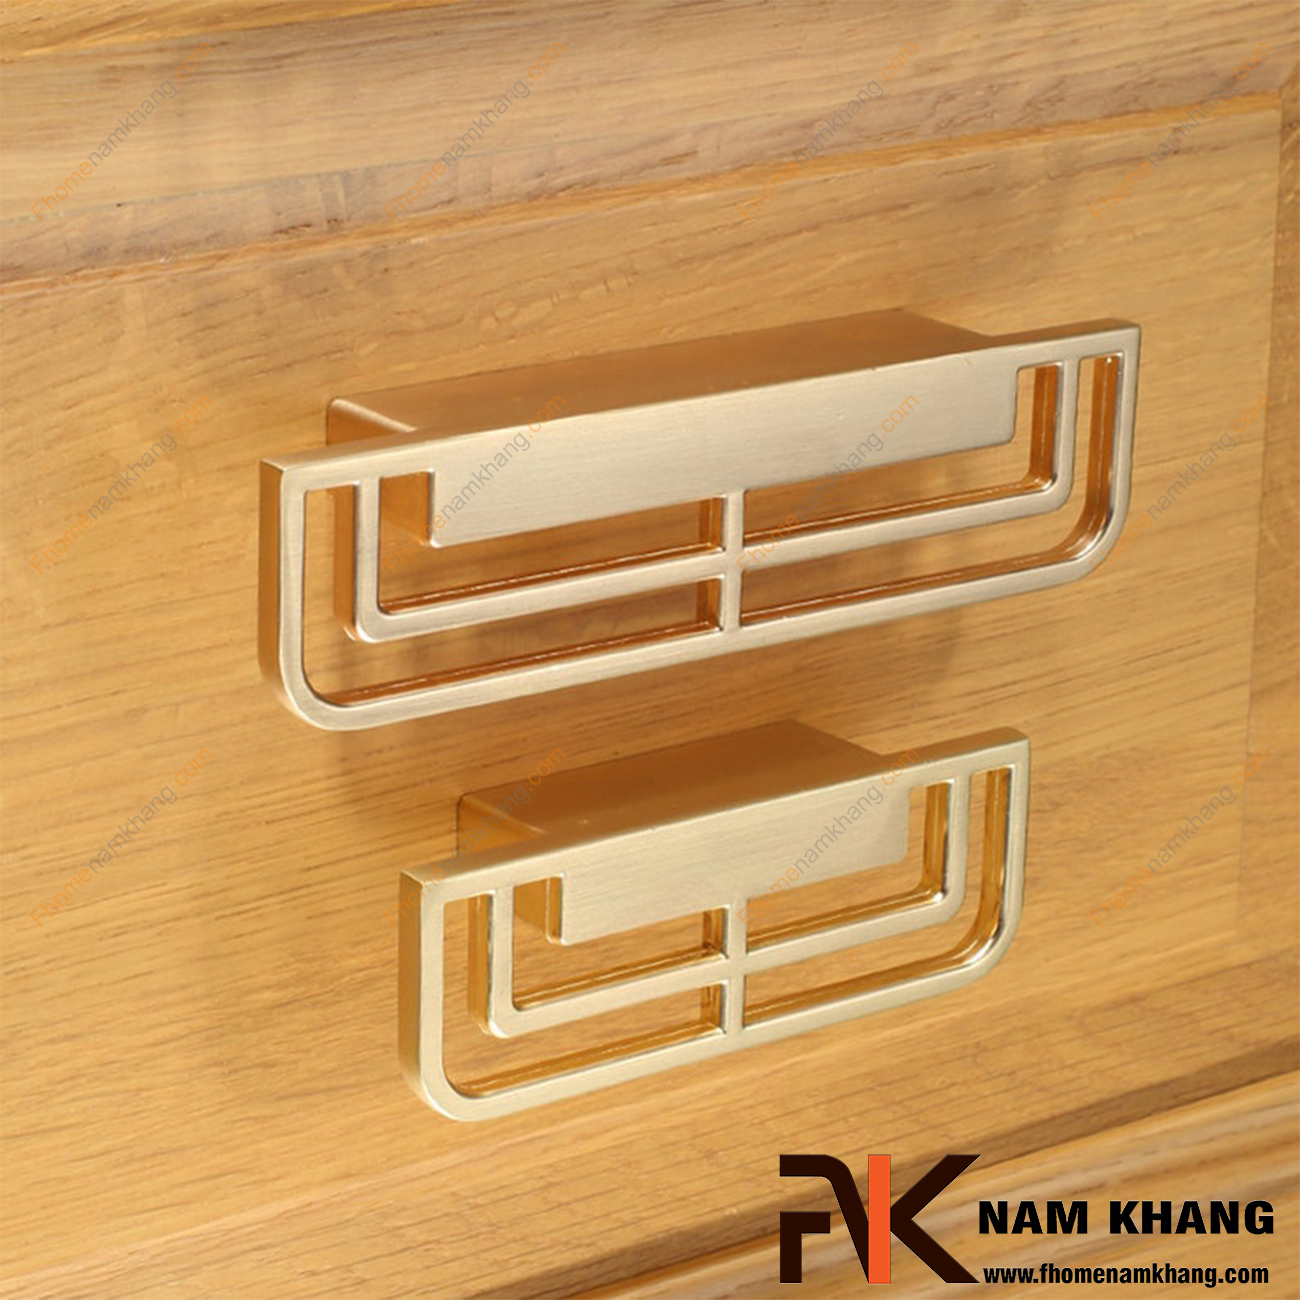 Tay kéo cửa tủ dạng cặp màu vàng mờ NK225-VM là một sản phẩm cách điệu được mang thiết kế dạng lưới chữ nhật tuyệt đẹp.